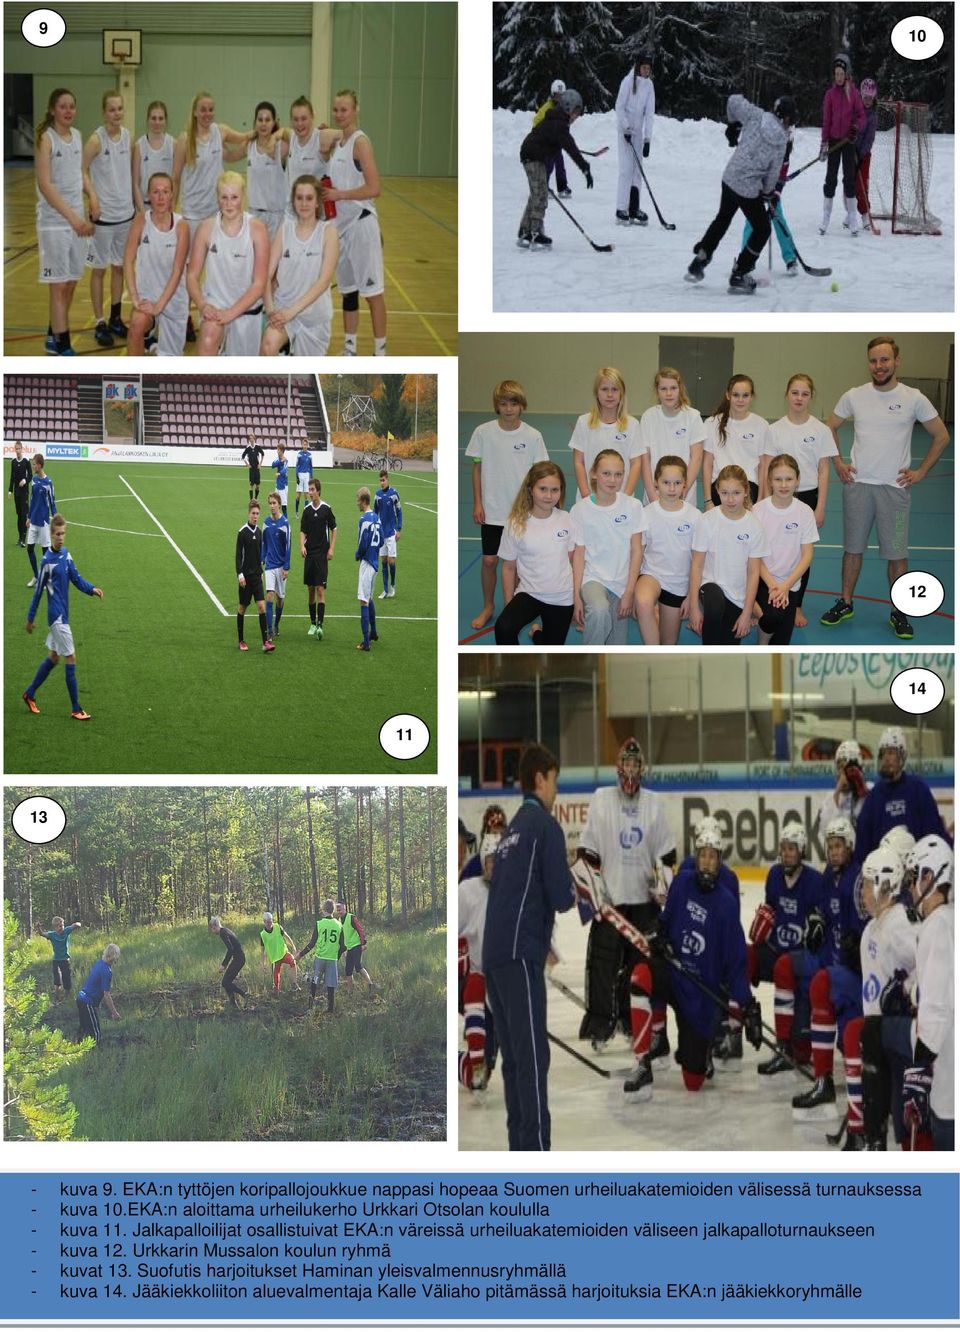 urheiluakatemioiden väliseen jalkapalloturnaukseen kuva 12 Urkkarin Mussalon koulun ryhmä kuvat 13 Suofutis harjoitukset